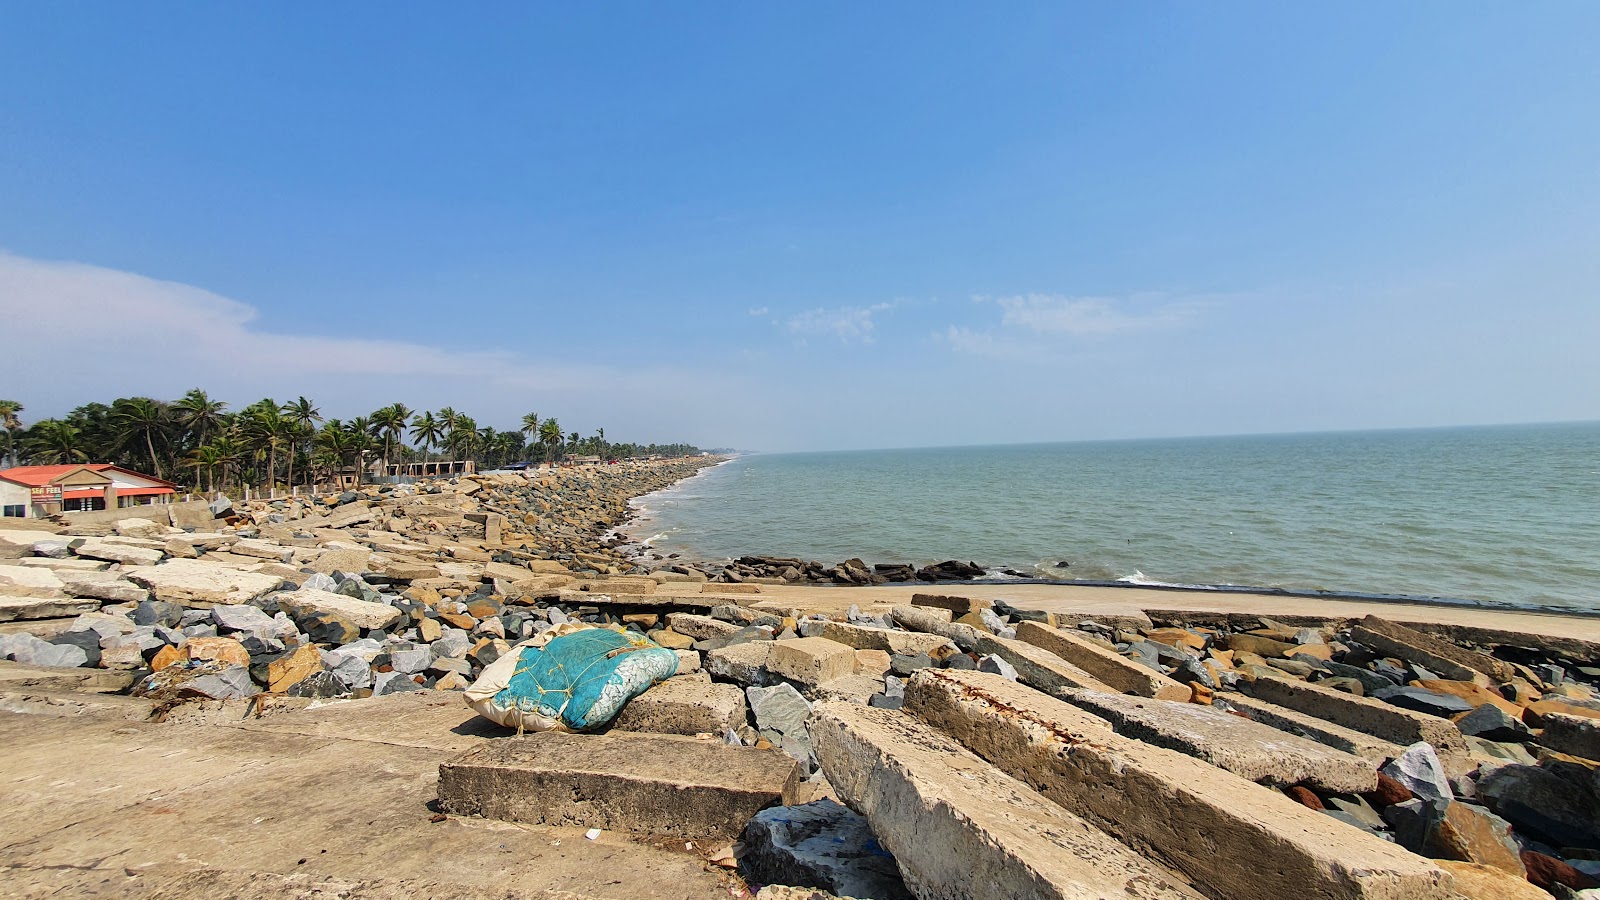 Fotografie cu Shankarpur Sea Beach - recomandat pentru călătorii în familie cu copii